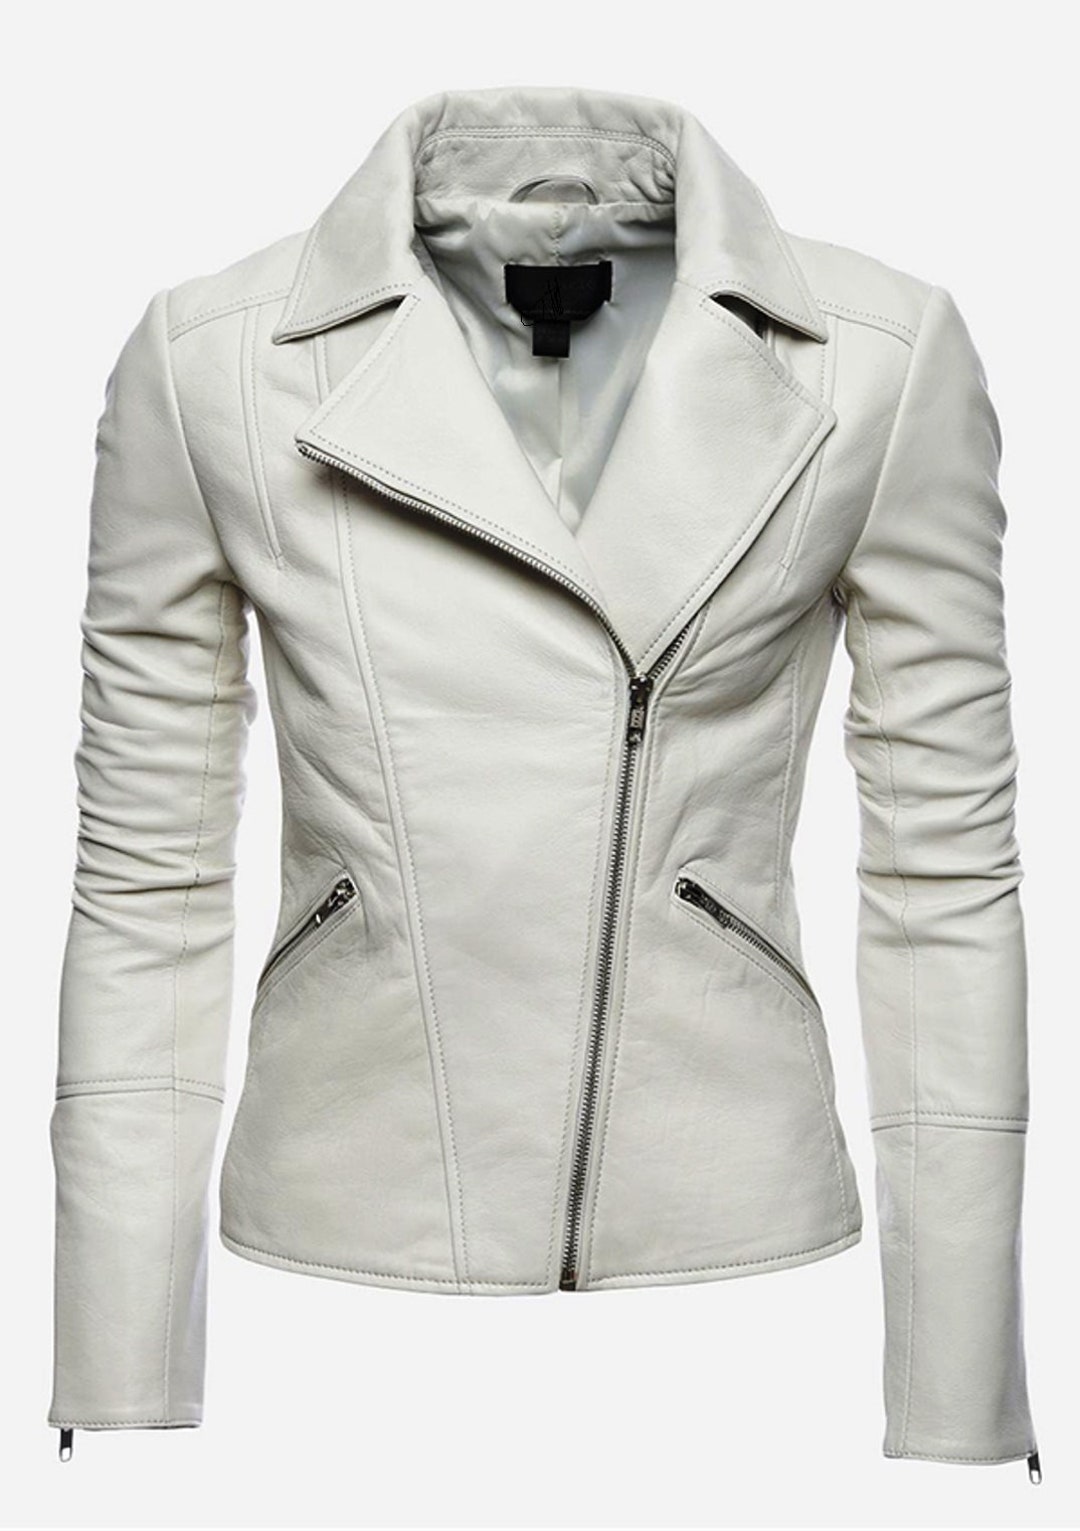 Women's Soft Lambskin White Leather Jacket Racer Biker Cafe Party-wear ...